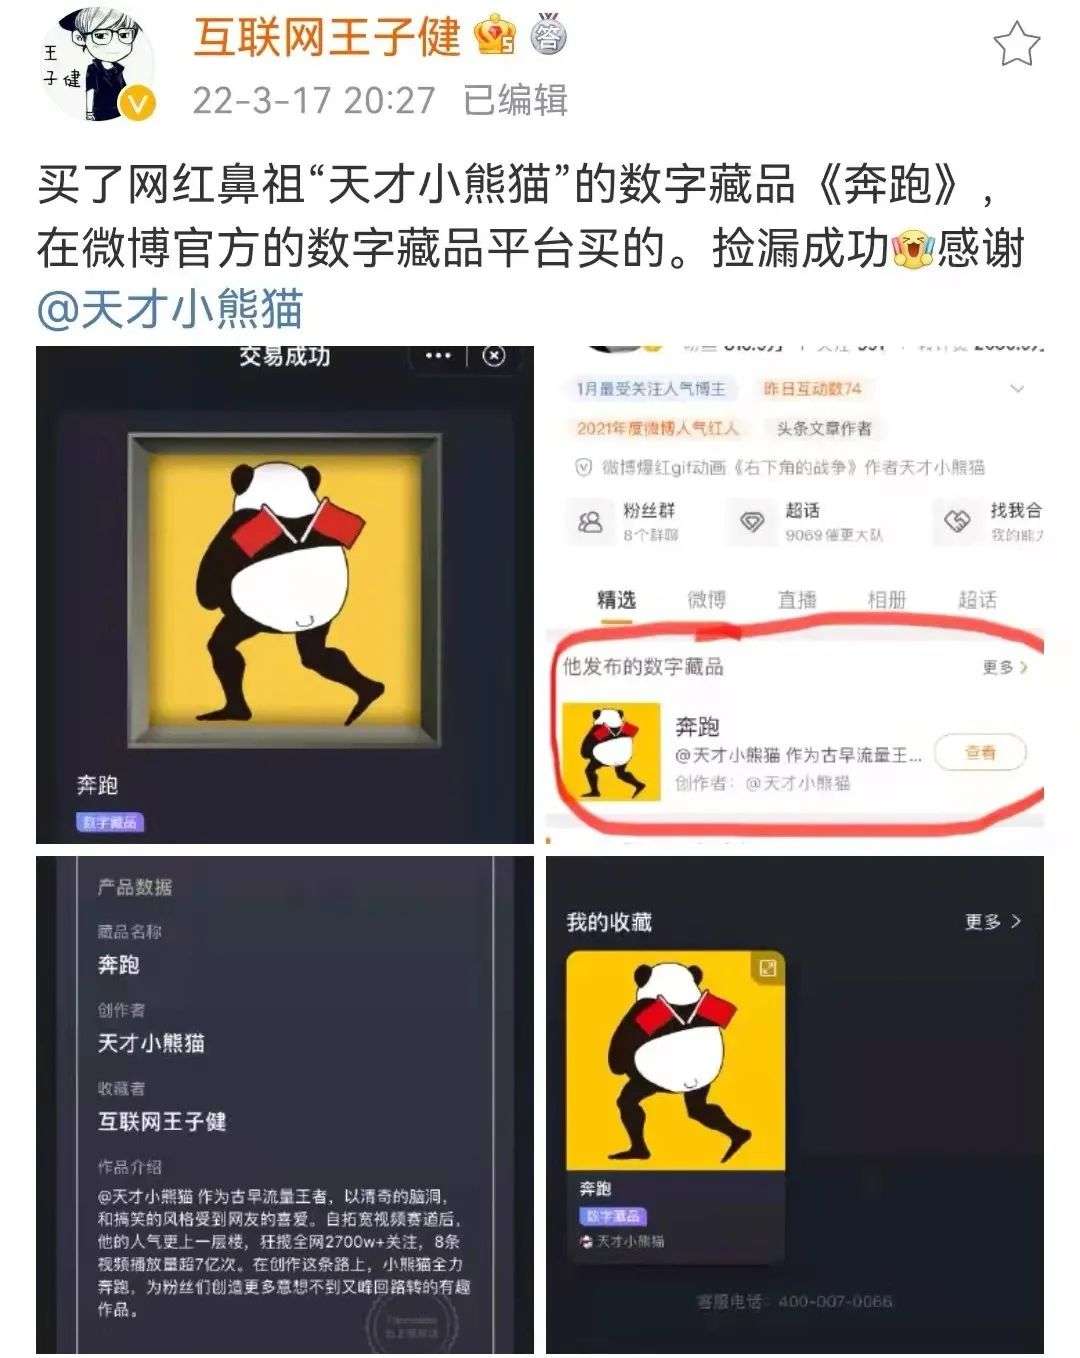 大v@天才小熊猫发布数字藏品《奔跑》